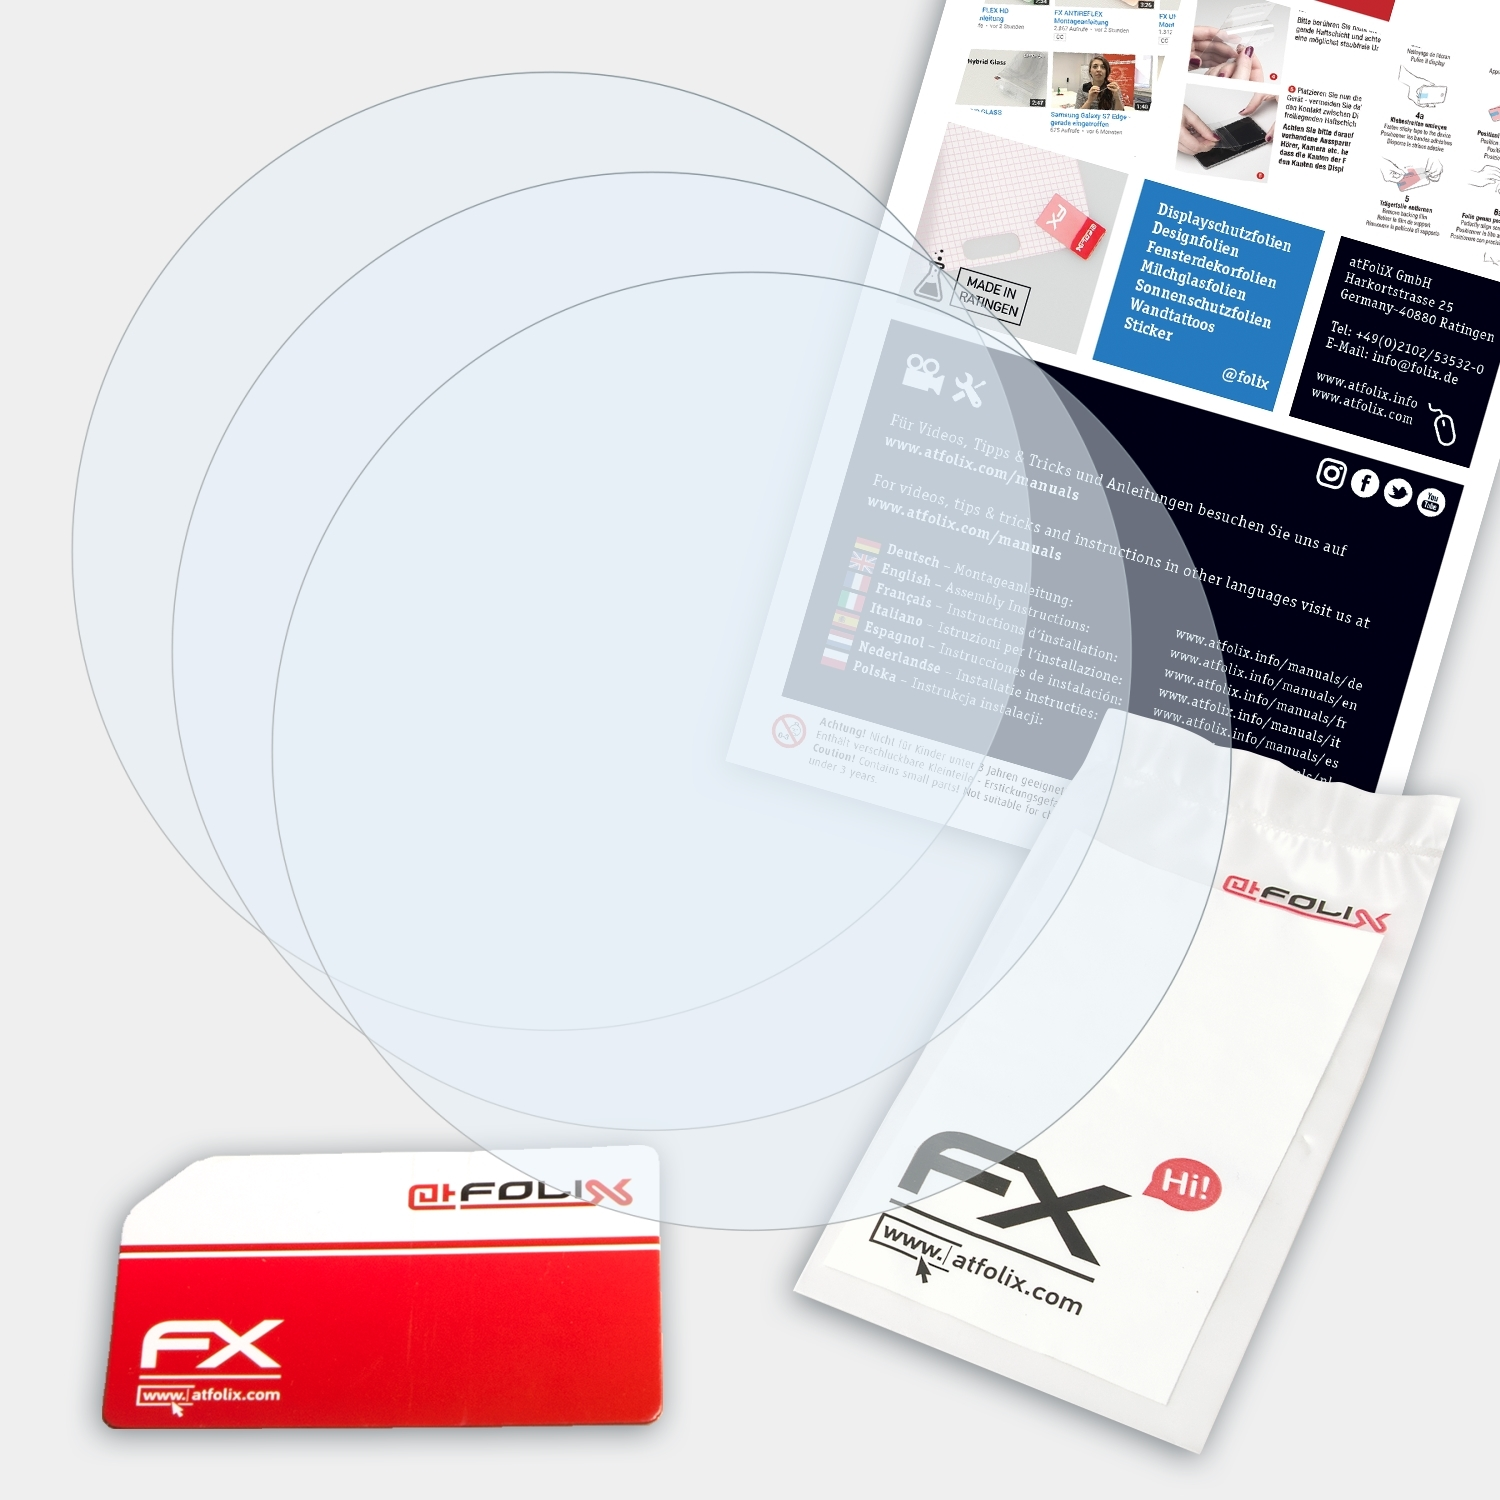 ATFOLIX 3x FX-Clear Displayschutz(für Suunto Ambit3 Run)